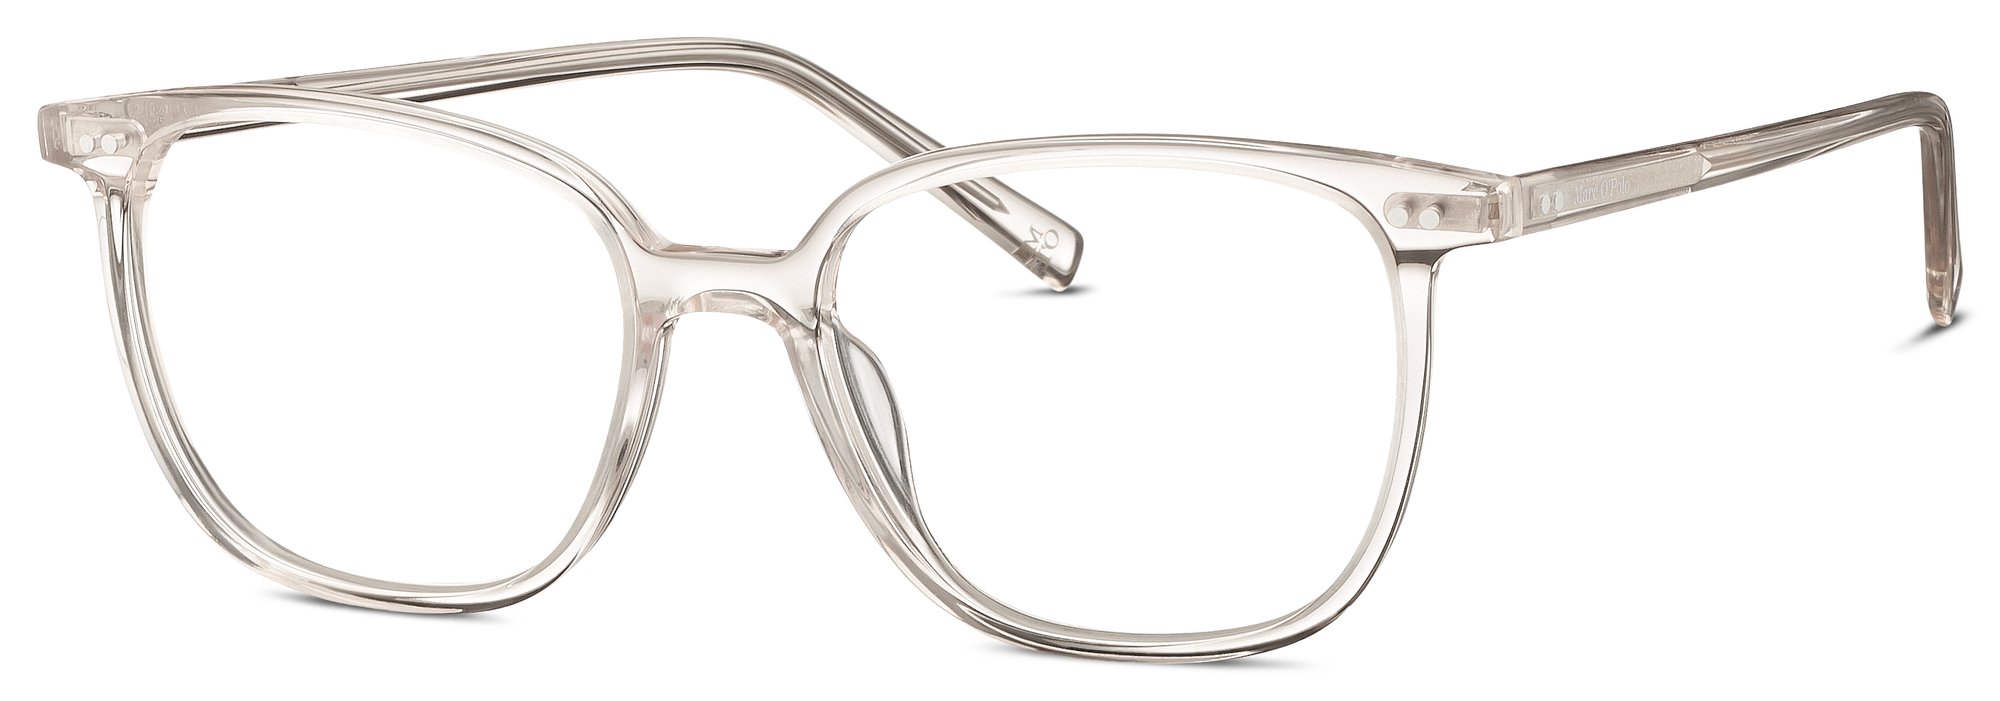 Das Bild zeigt die Korrektionsbrille 503196 80 von der Marke Marc O‘Polo in beige.